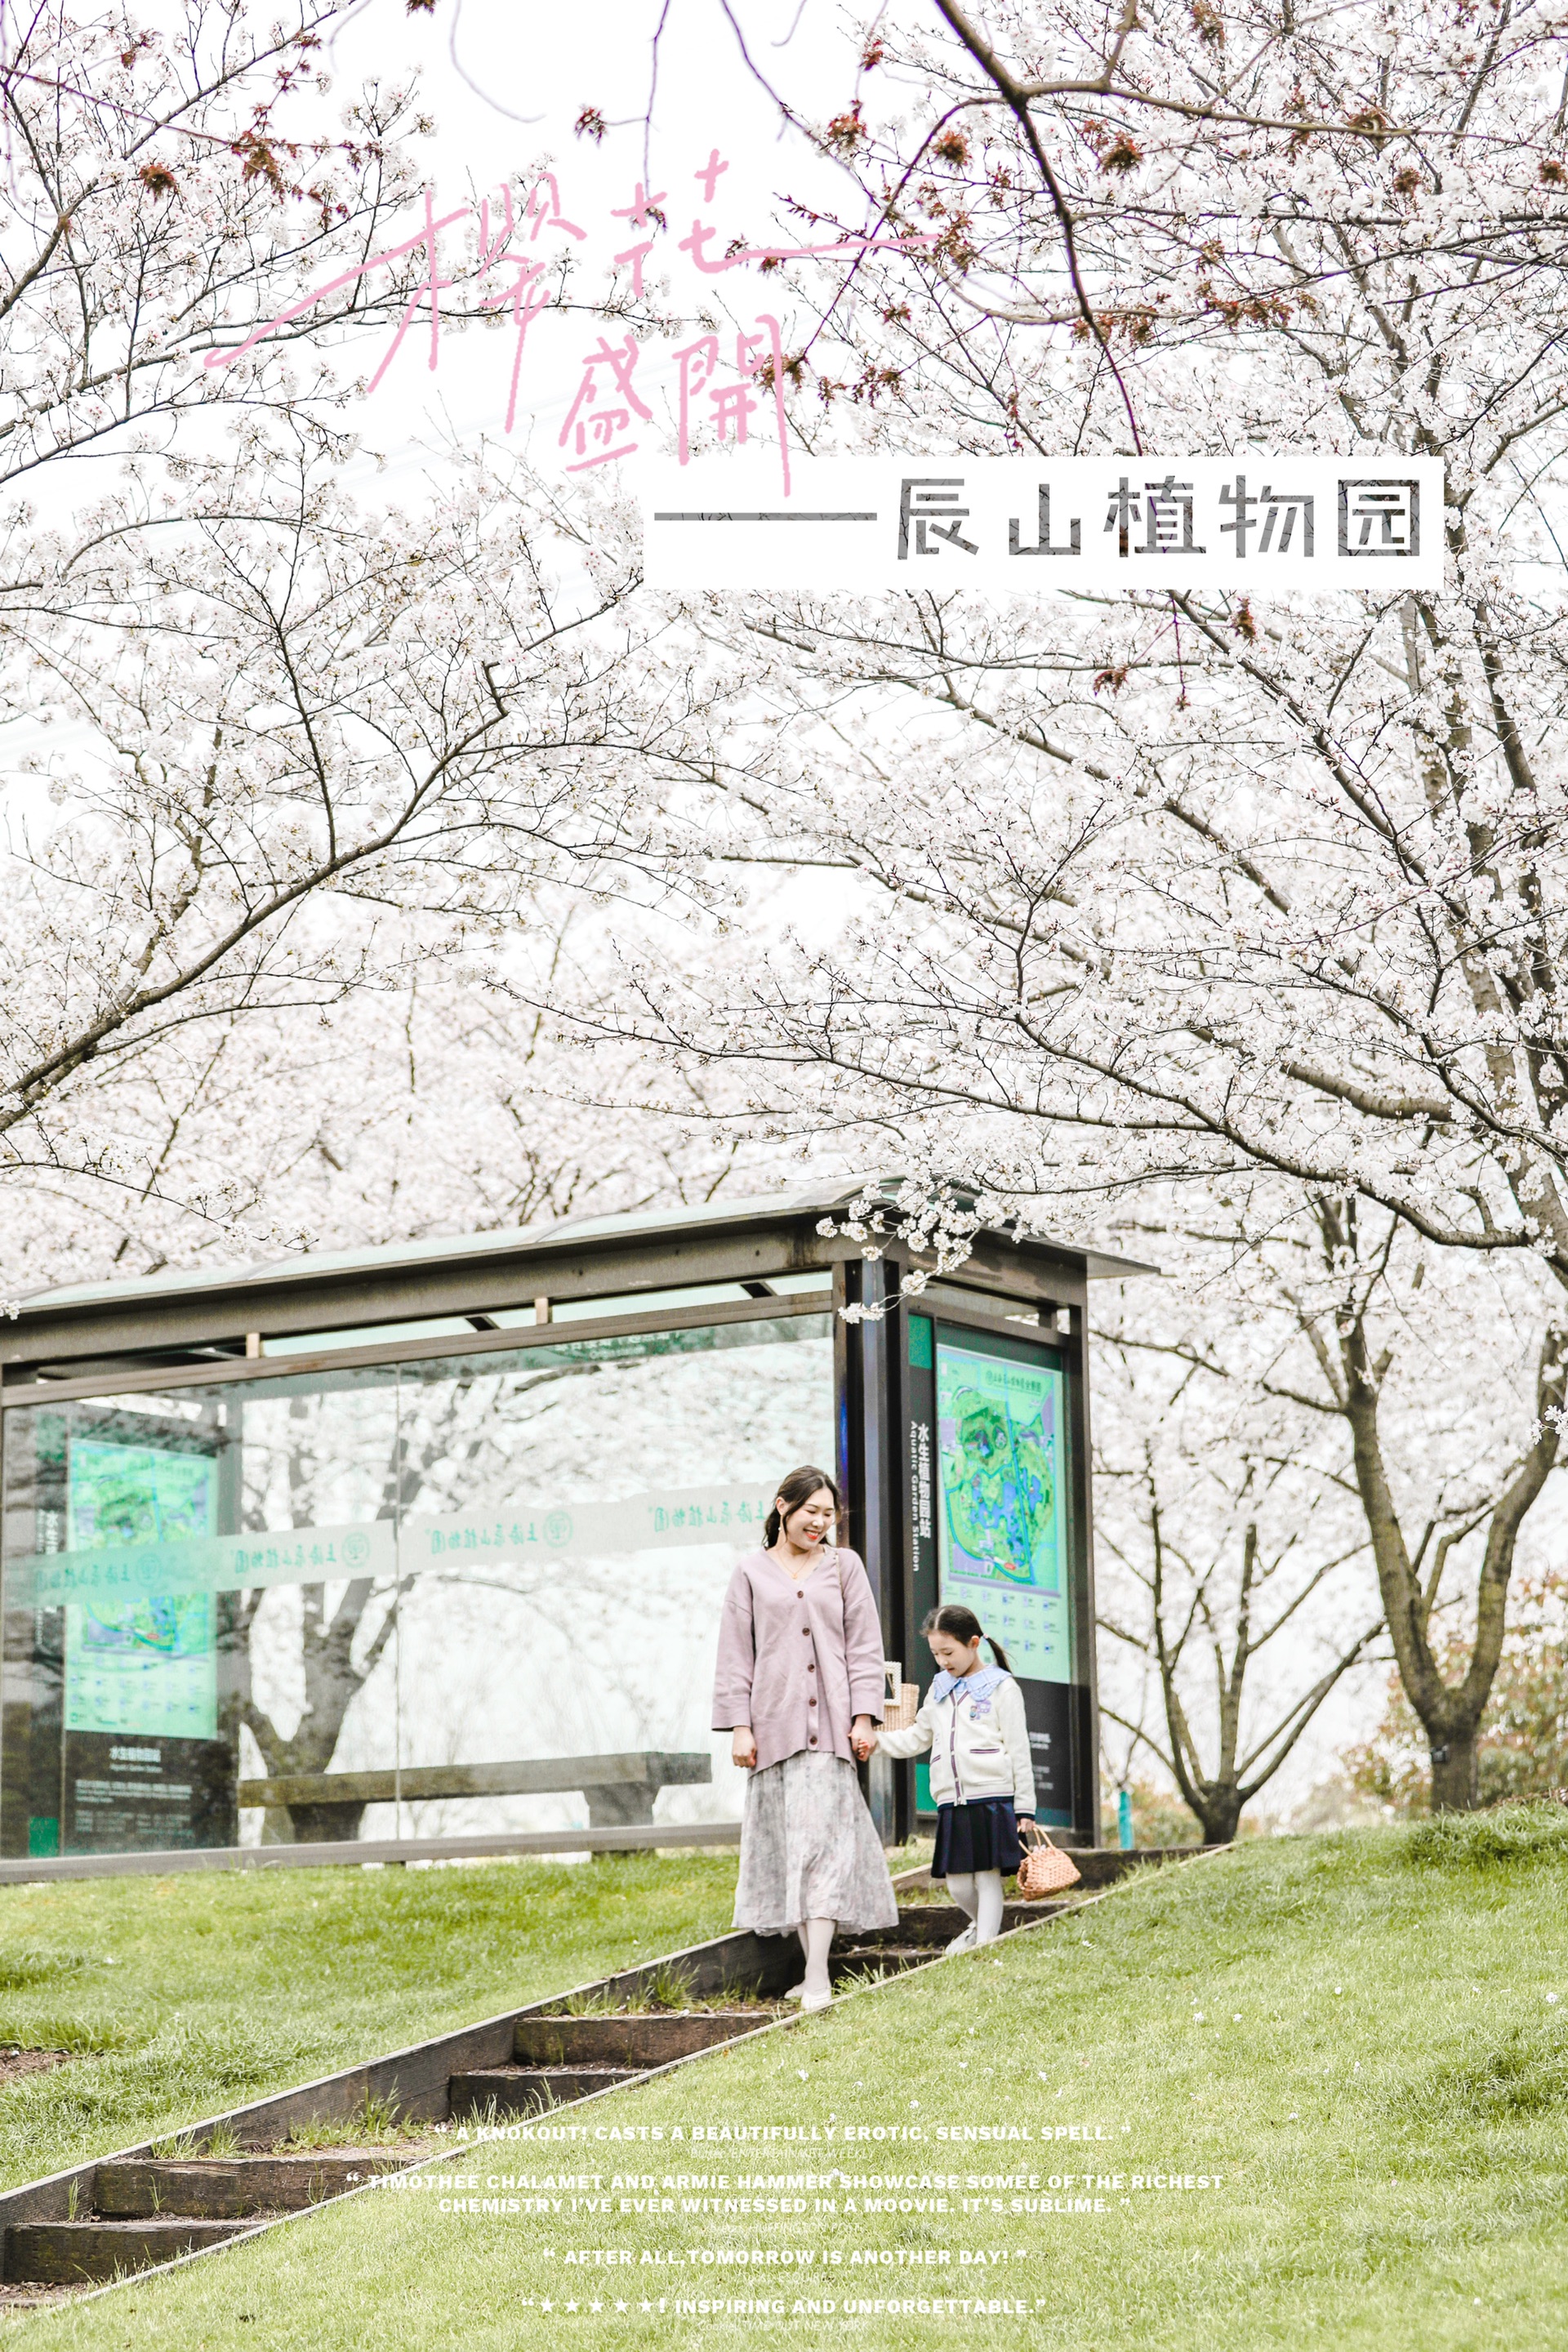 上海辰山植物园| 2022幸运邂逅绝美樱花